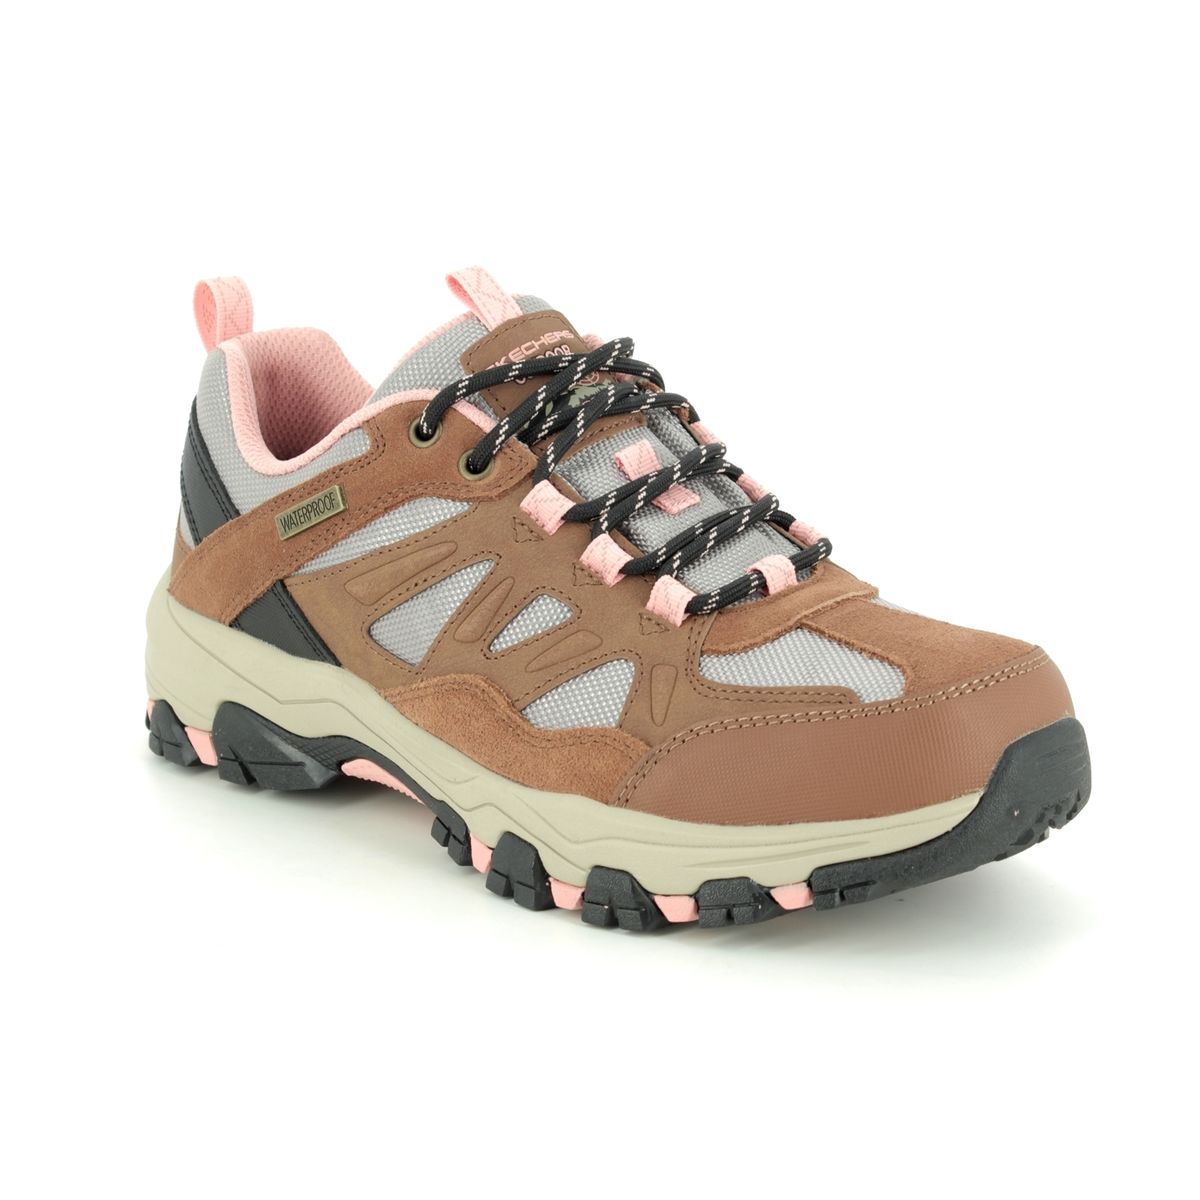 Skechers Selmen West Relaxed BRTN Brown Tan Womens Walking Shoes 167003 in a Plain Leather in Size 8